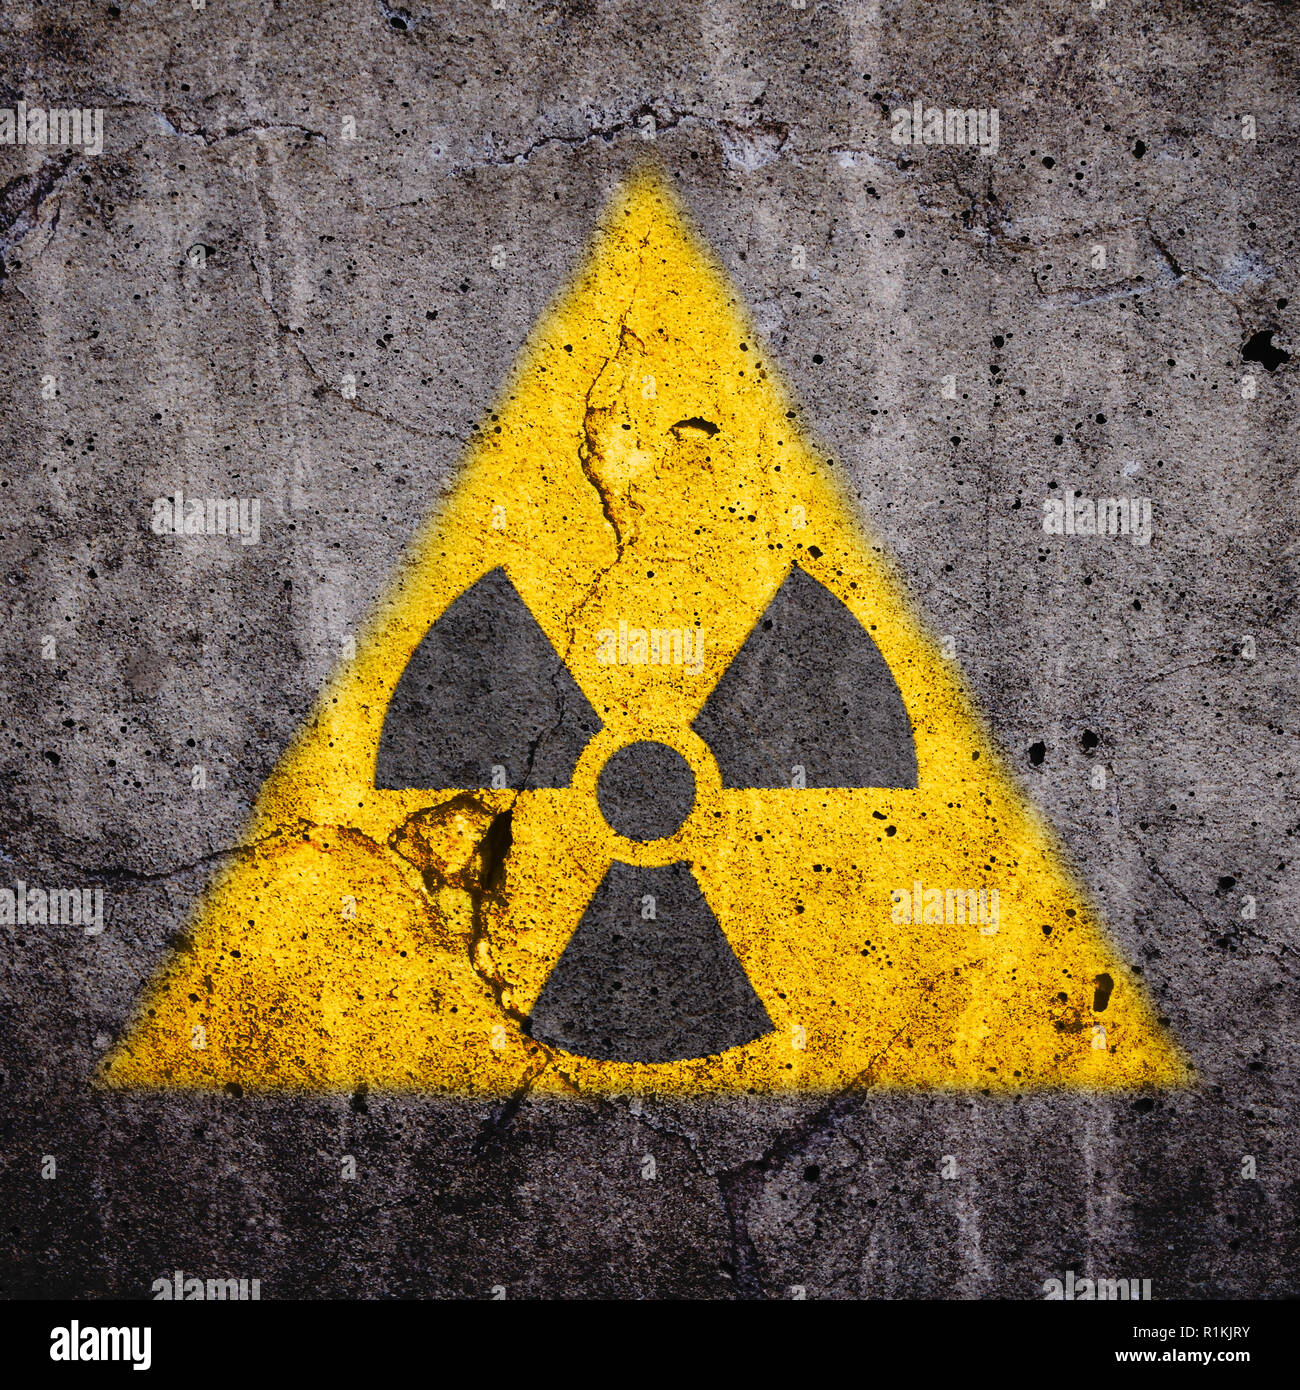 (Radioactifs) Rayonnements ionisants atomique symbole d'avertissement de danger dans la forme jaune triangulaire peint sur un mur de ciment béton fissuré massive avec et da Banque D'Images